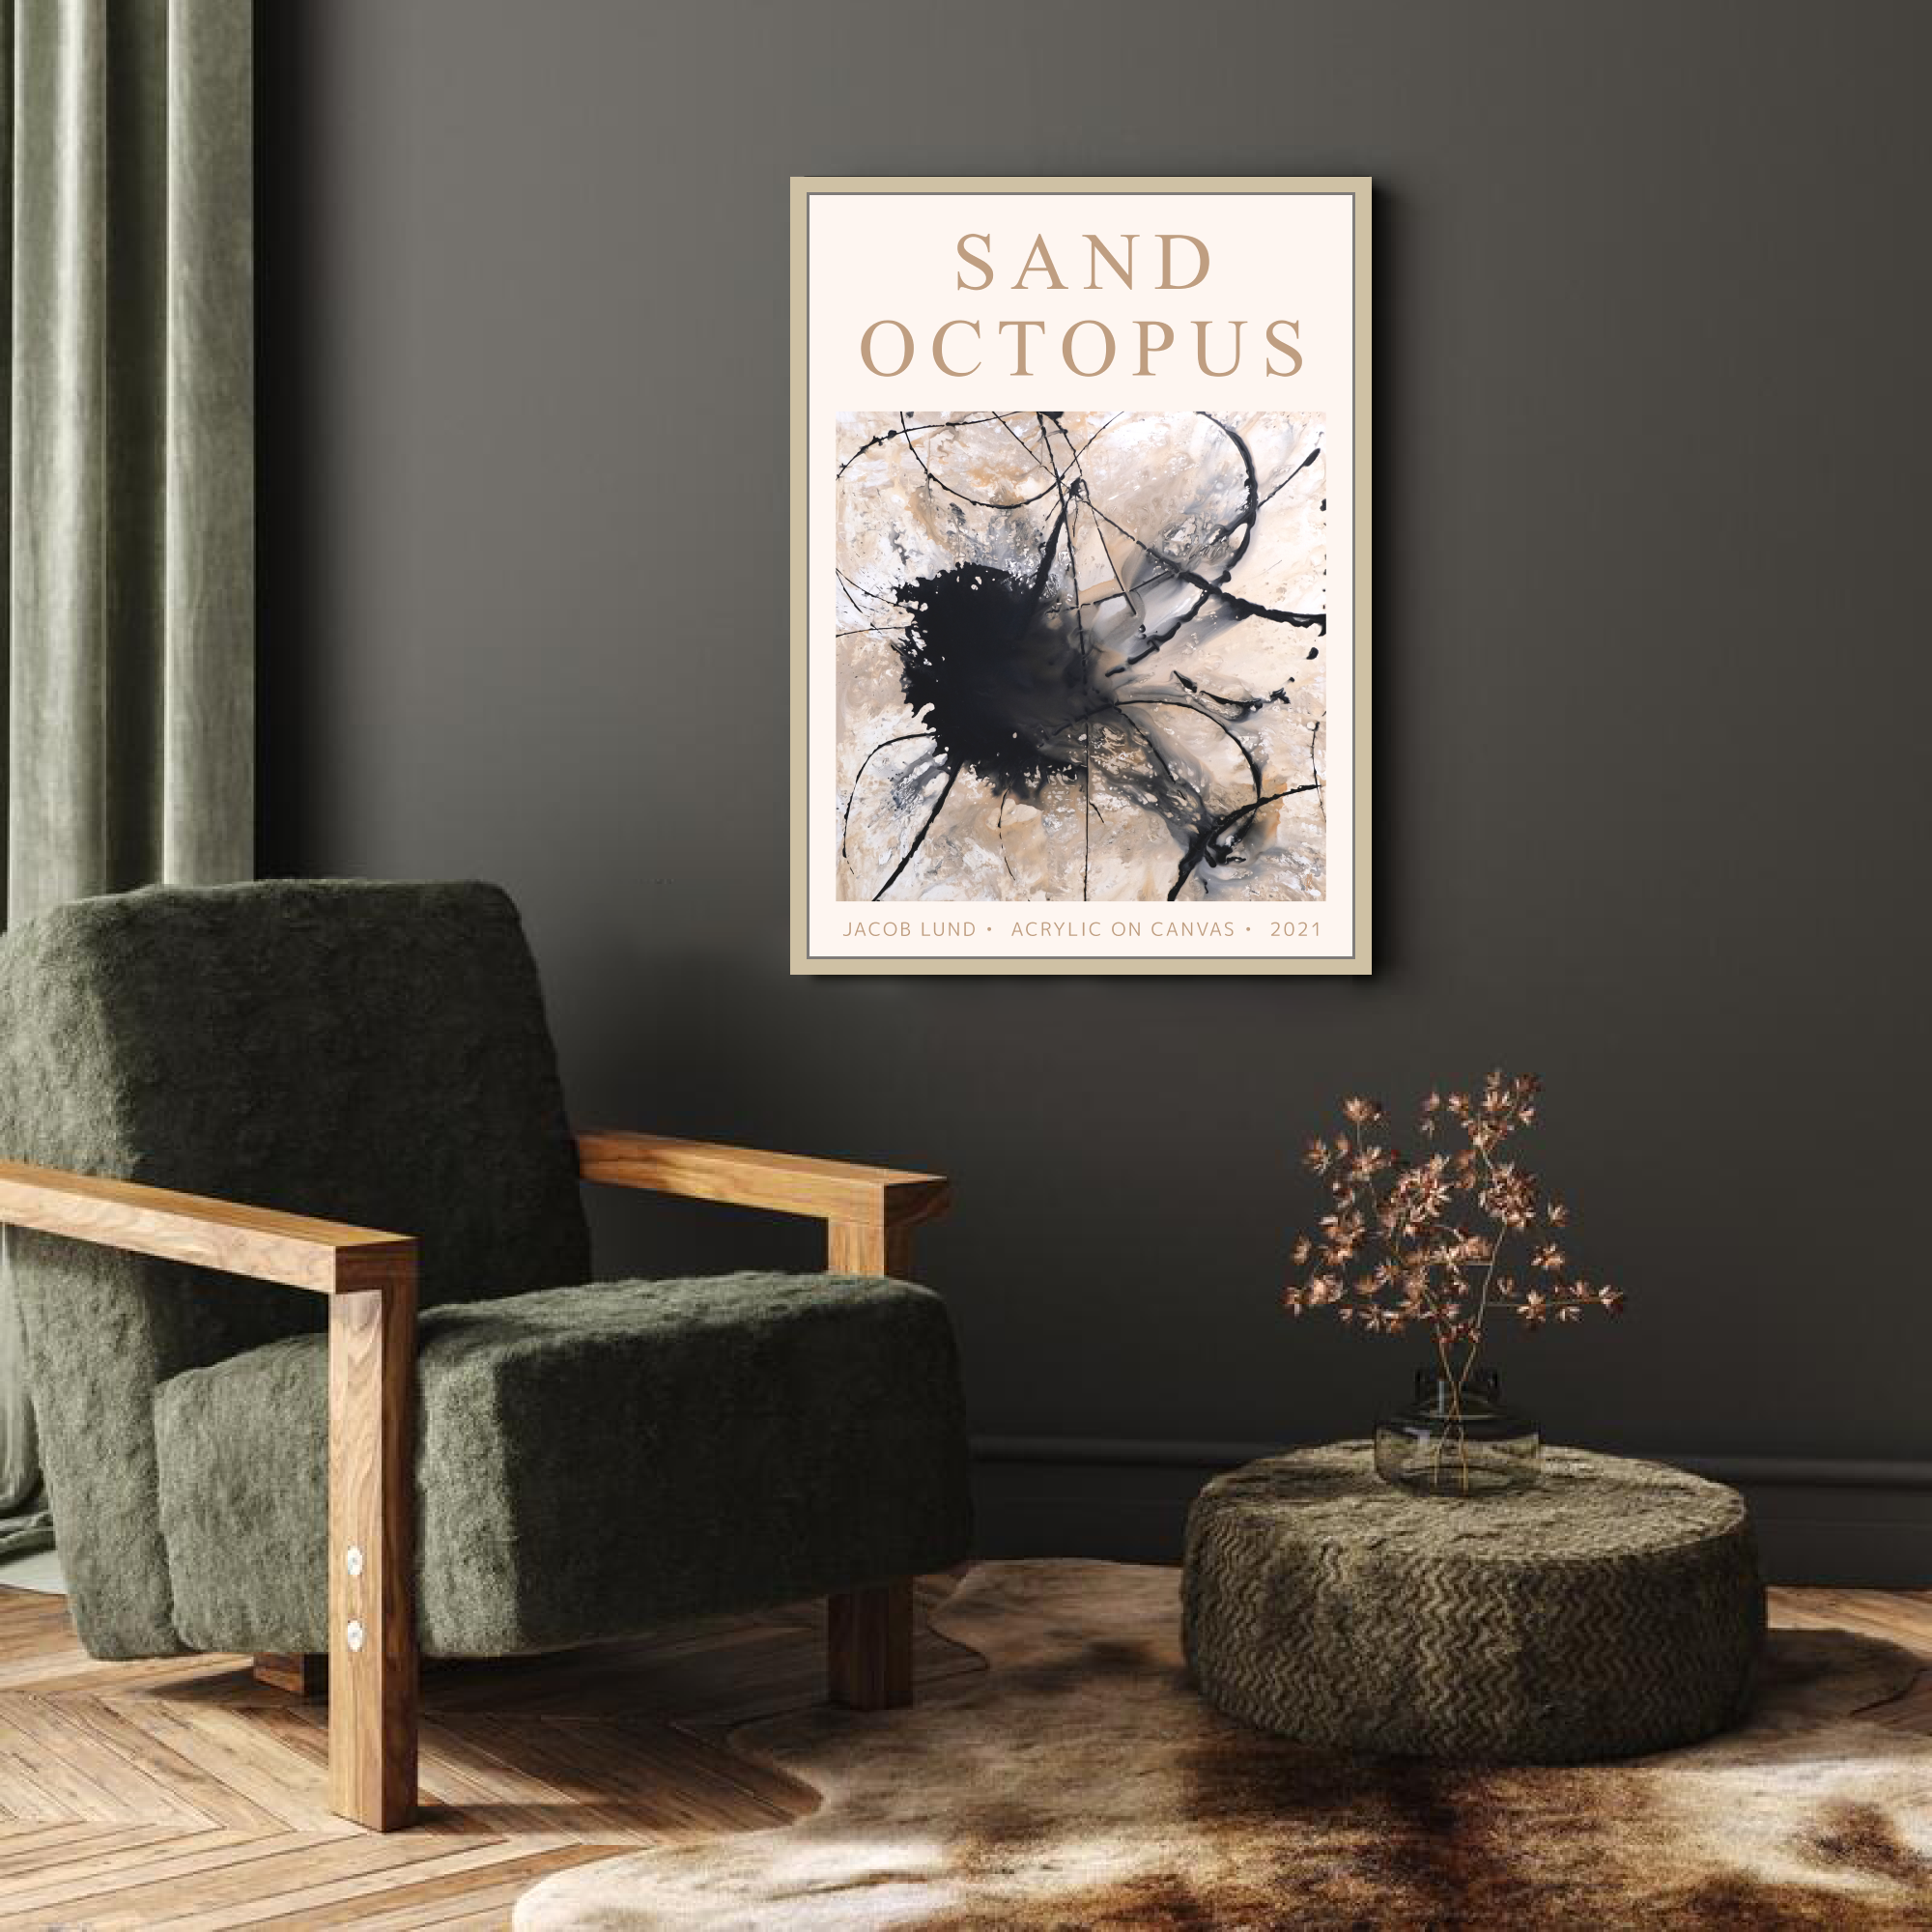 Plakat: "Sand Octopus"